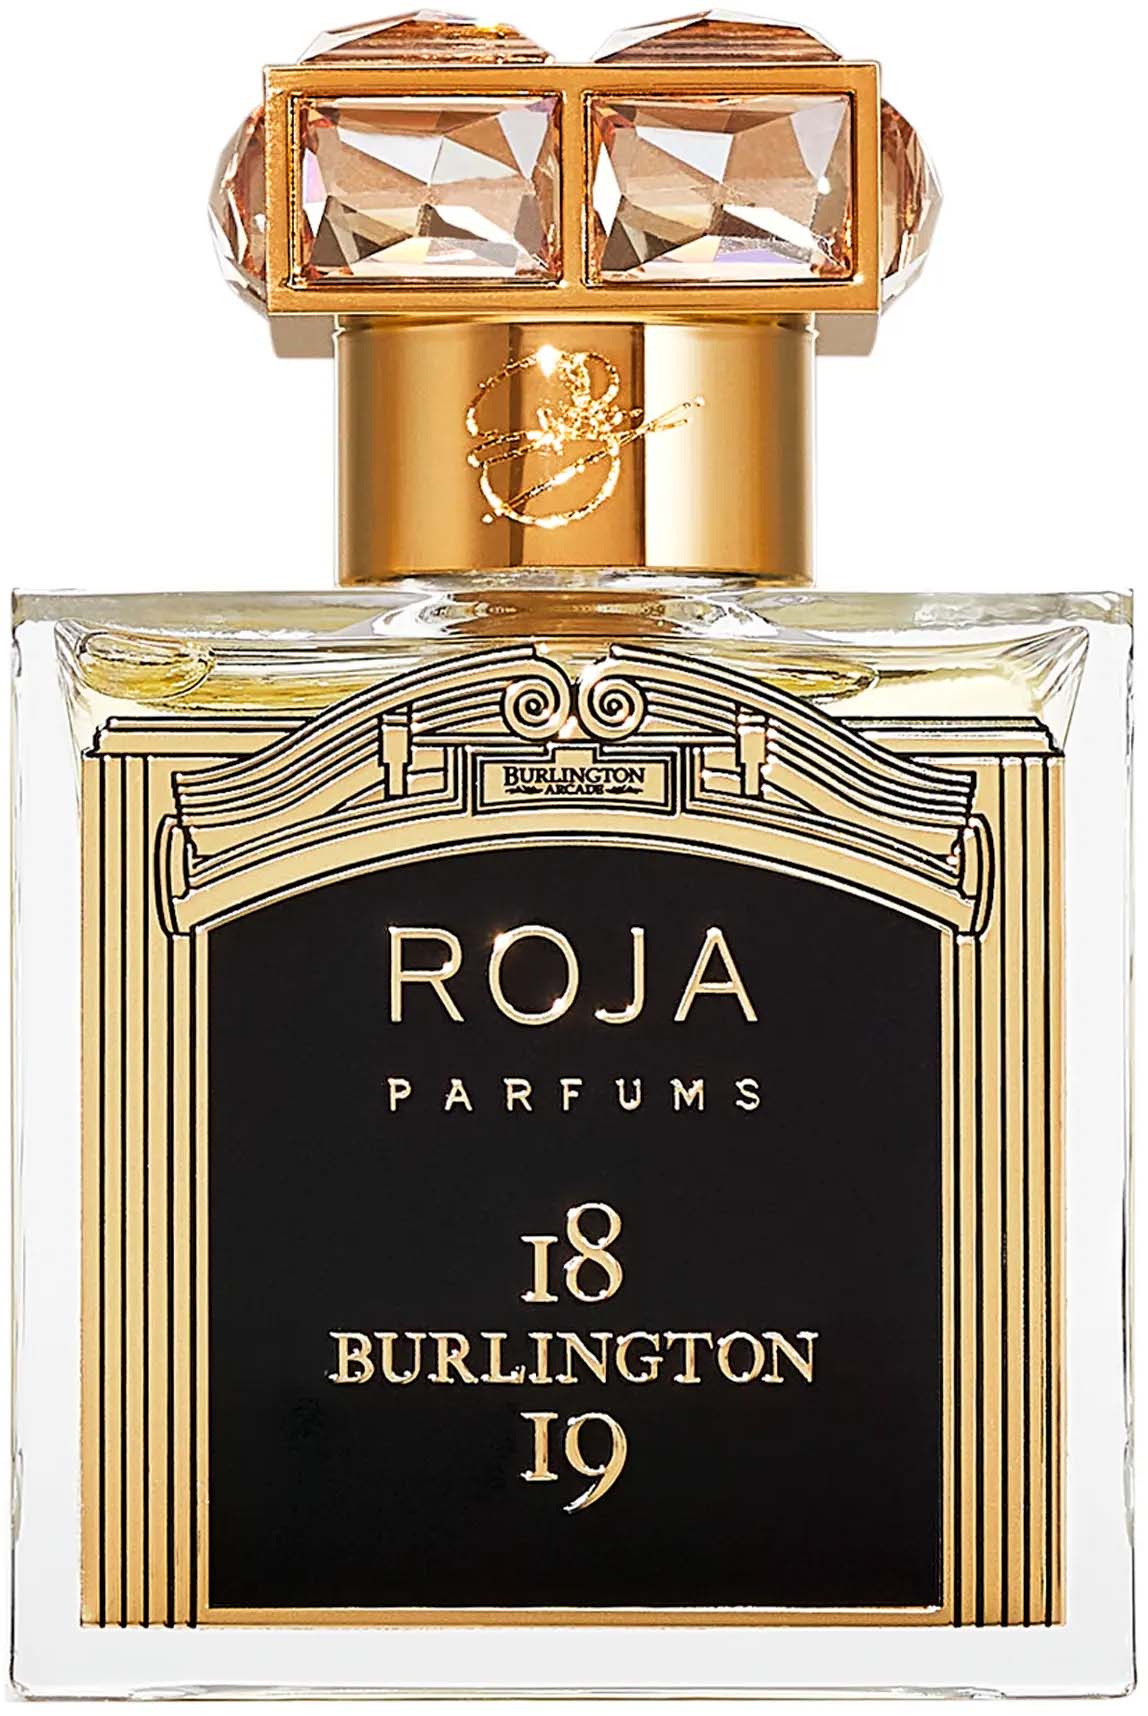 roja parfums burlington 1819